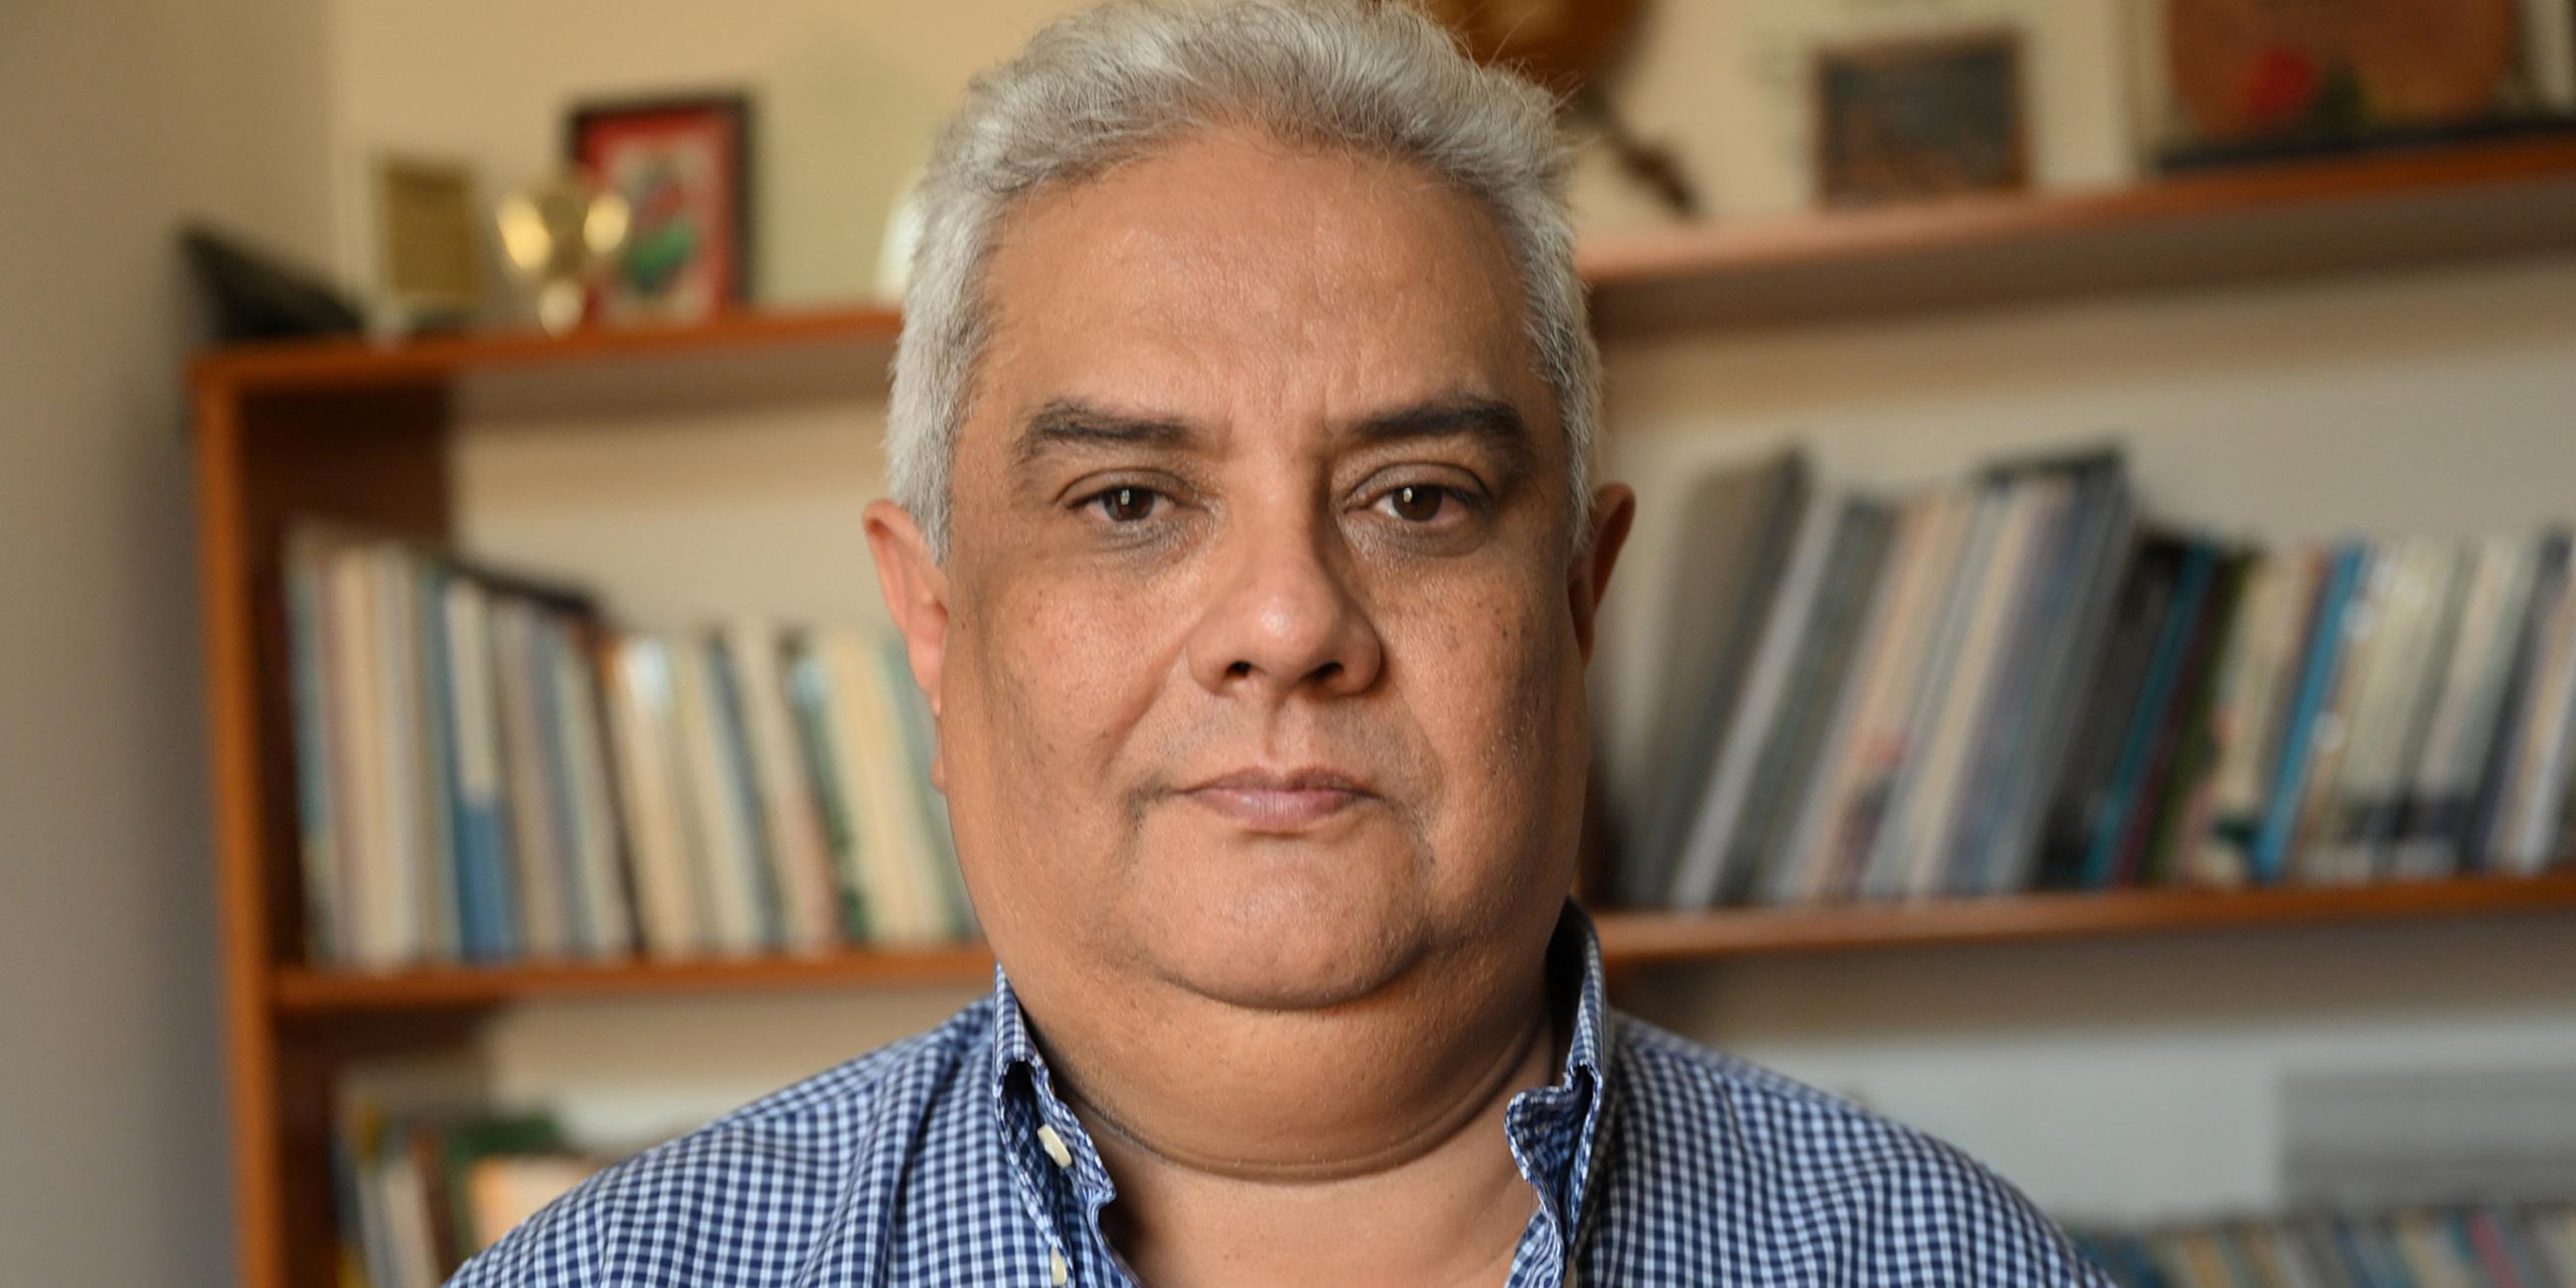 Nery Rodenas vom Menschenrechtsbüro in Guatemala-Stadt